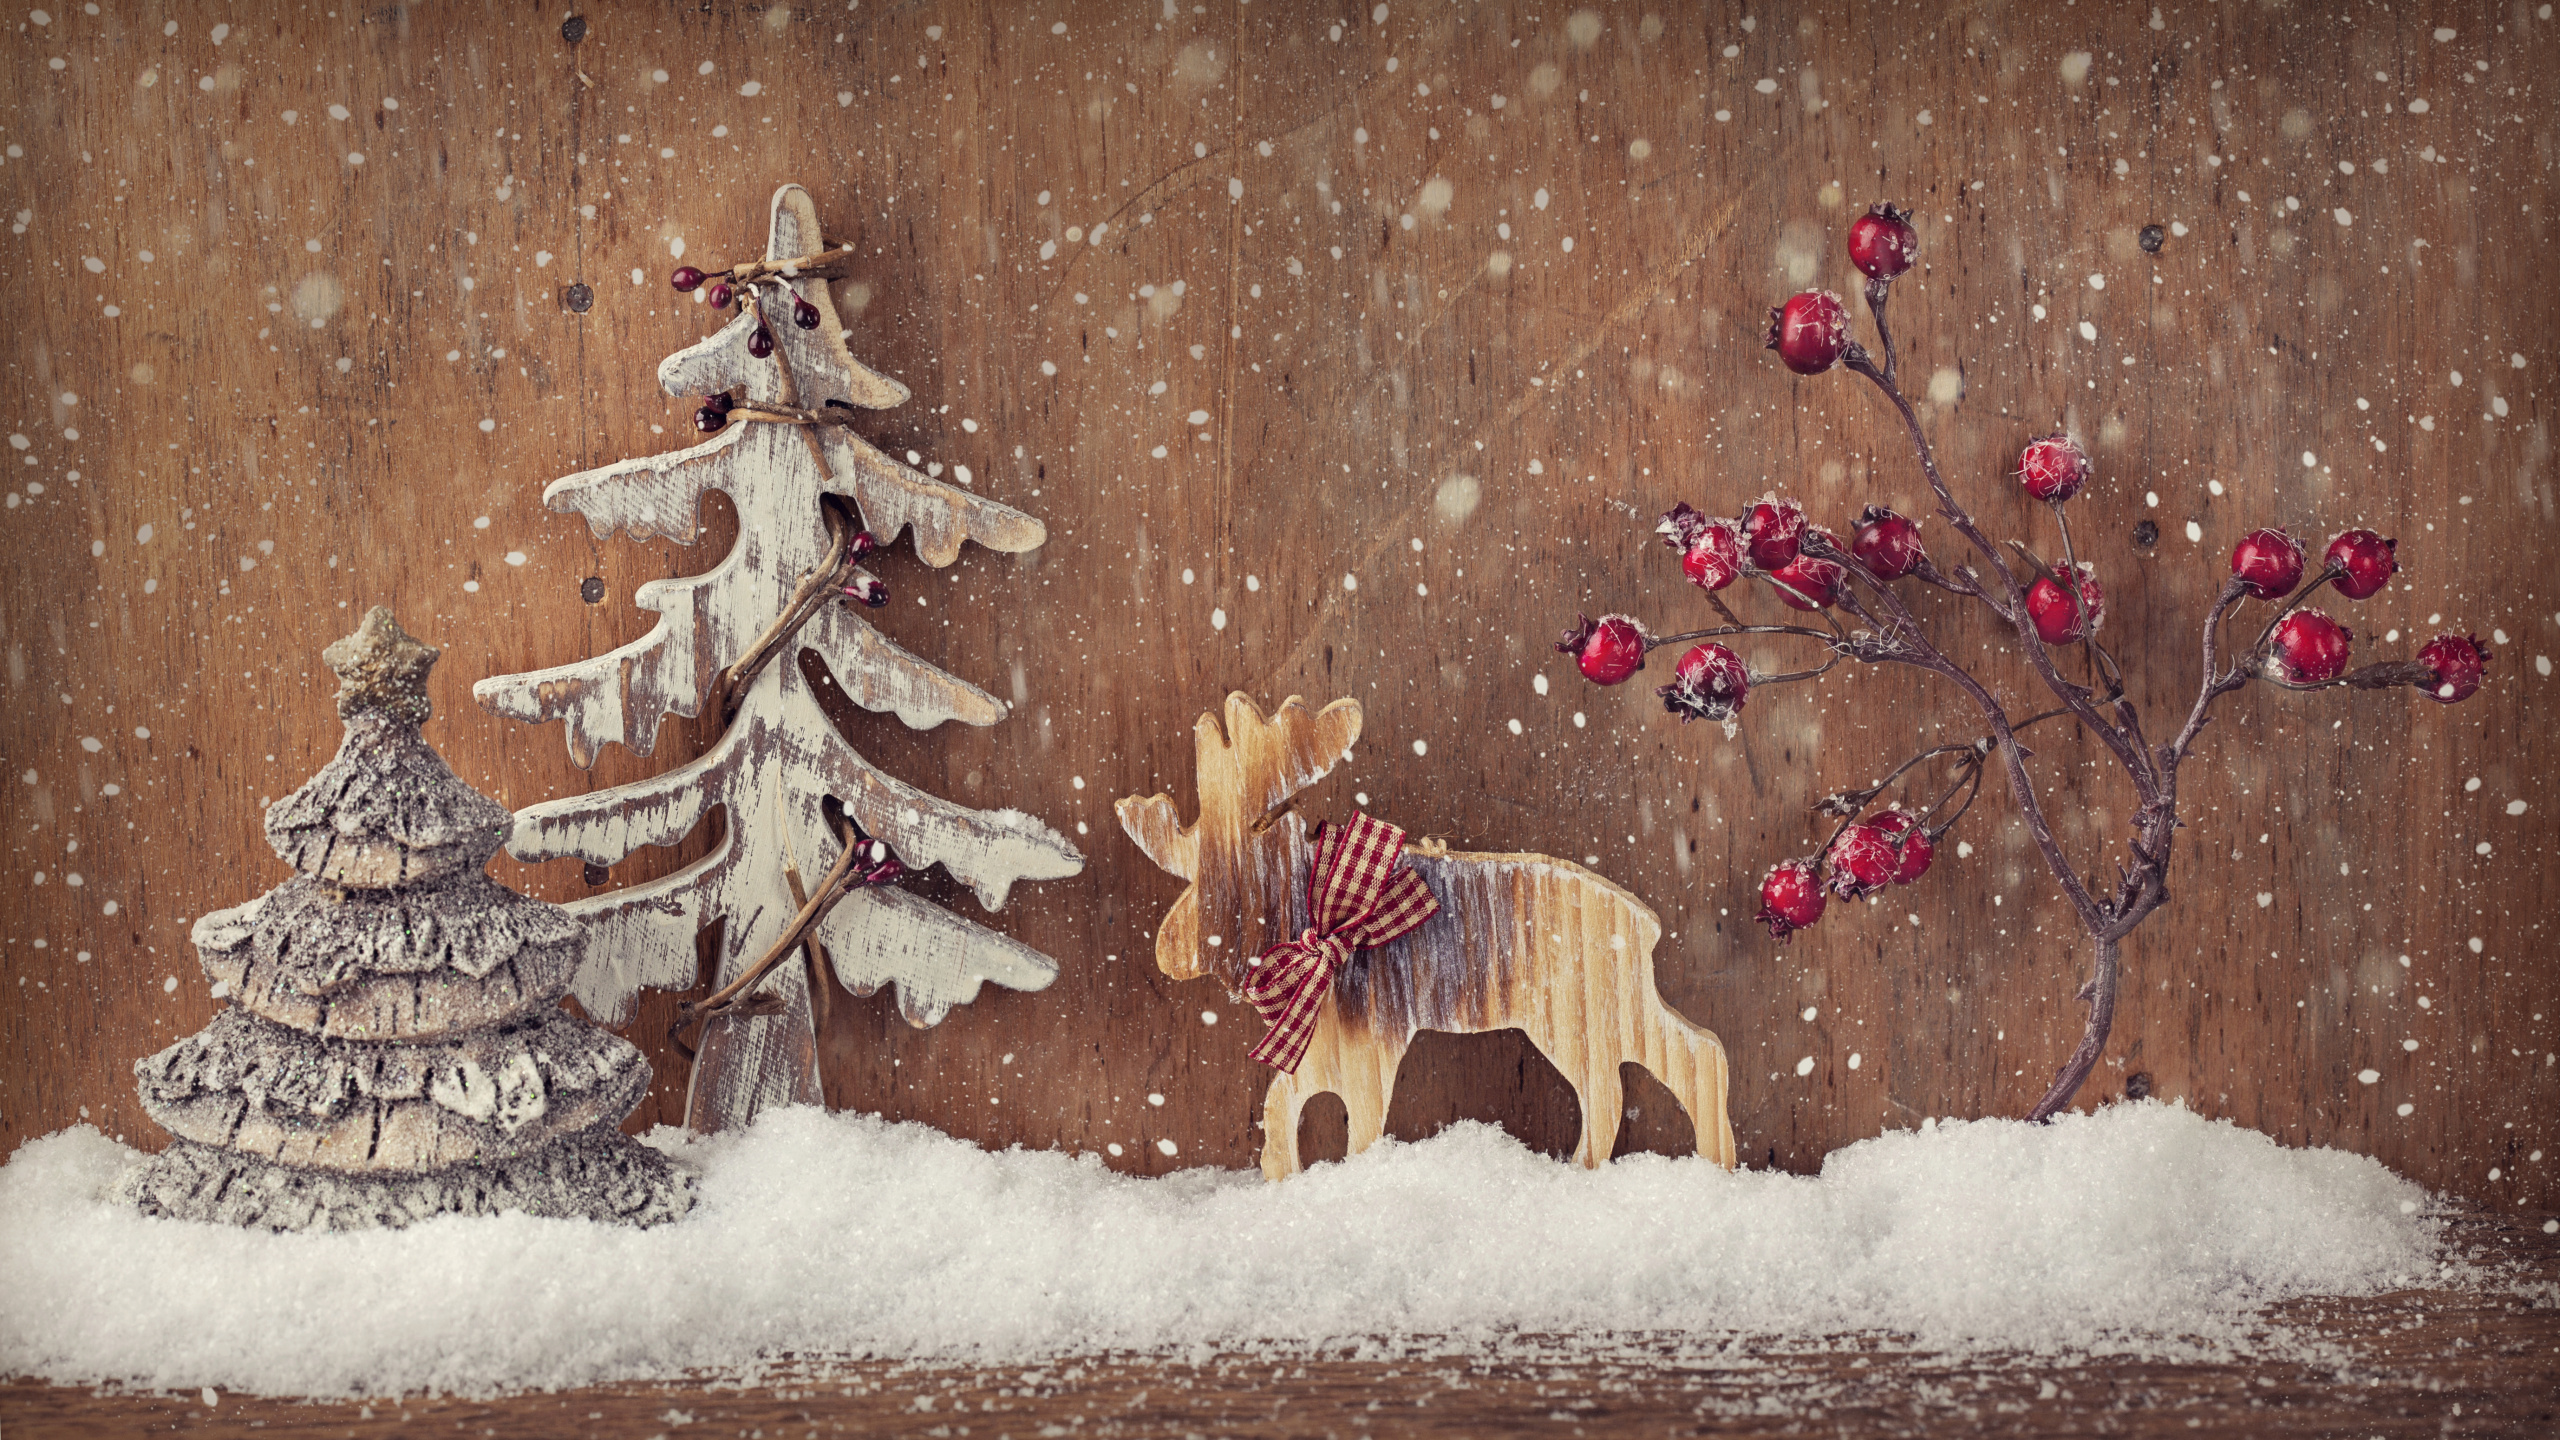 Le Jour De Noël, Arbre de Noël, Décoration de Noël, Hiver, Neige. Wallpaper in 2560x1440 Resolution